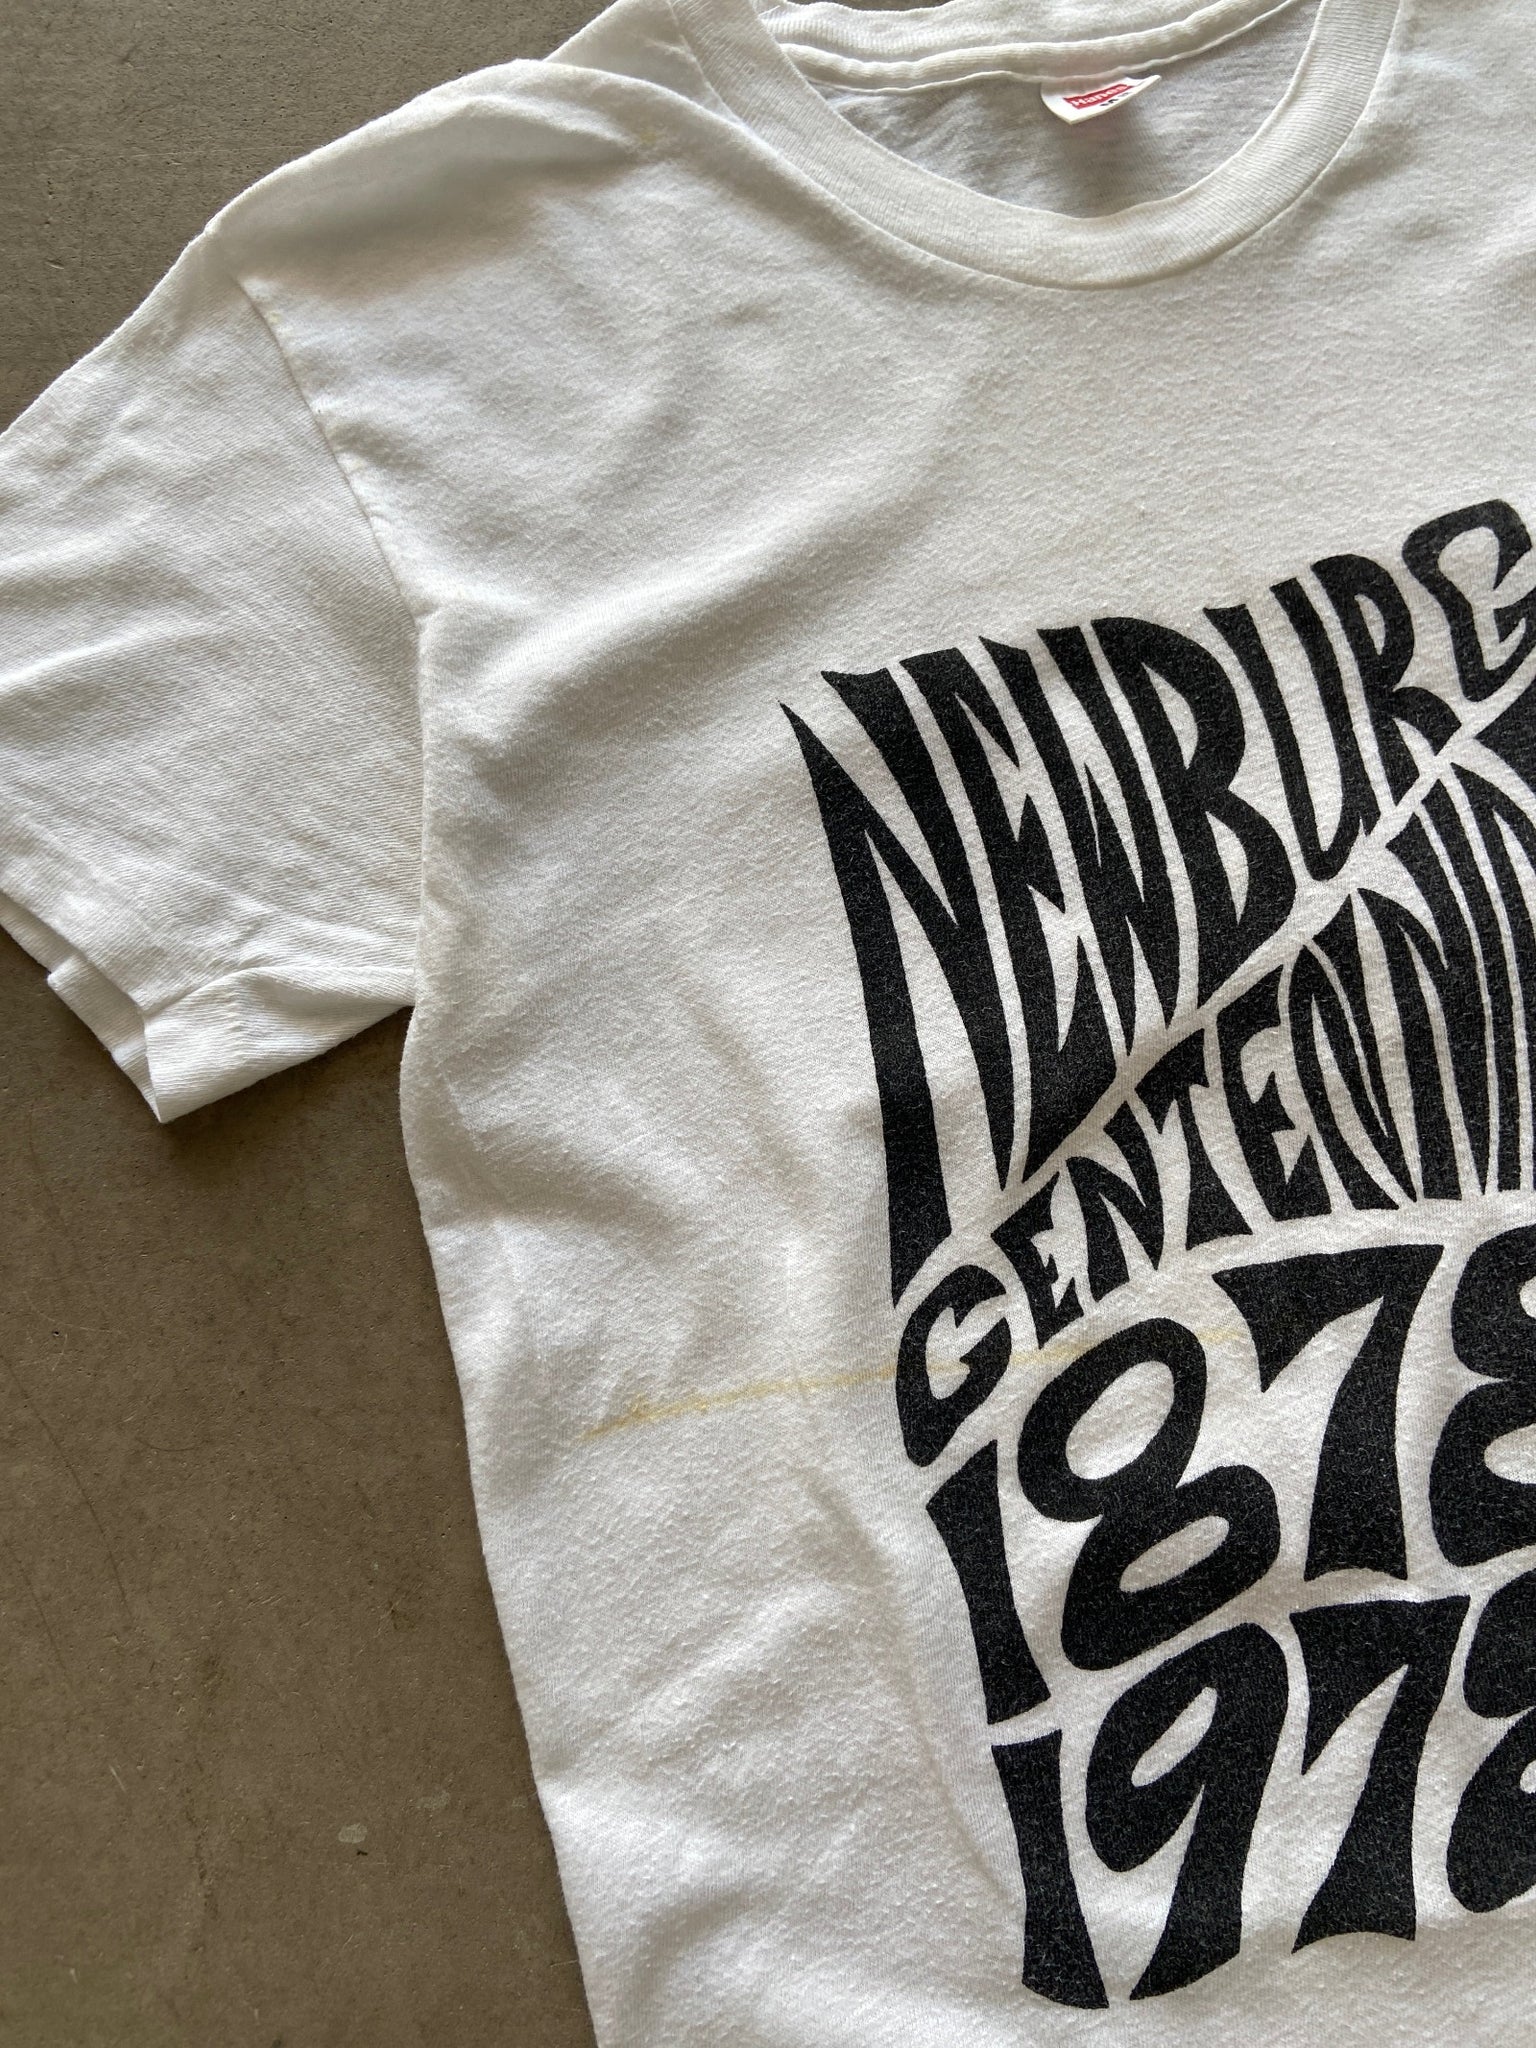 1978 Newburg Centennial Book T-Shirt - M